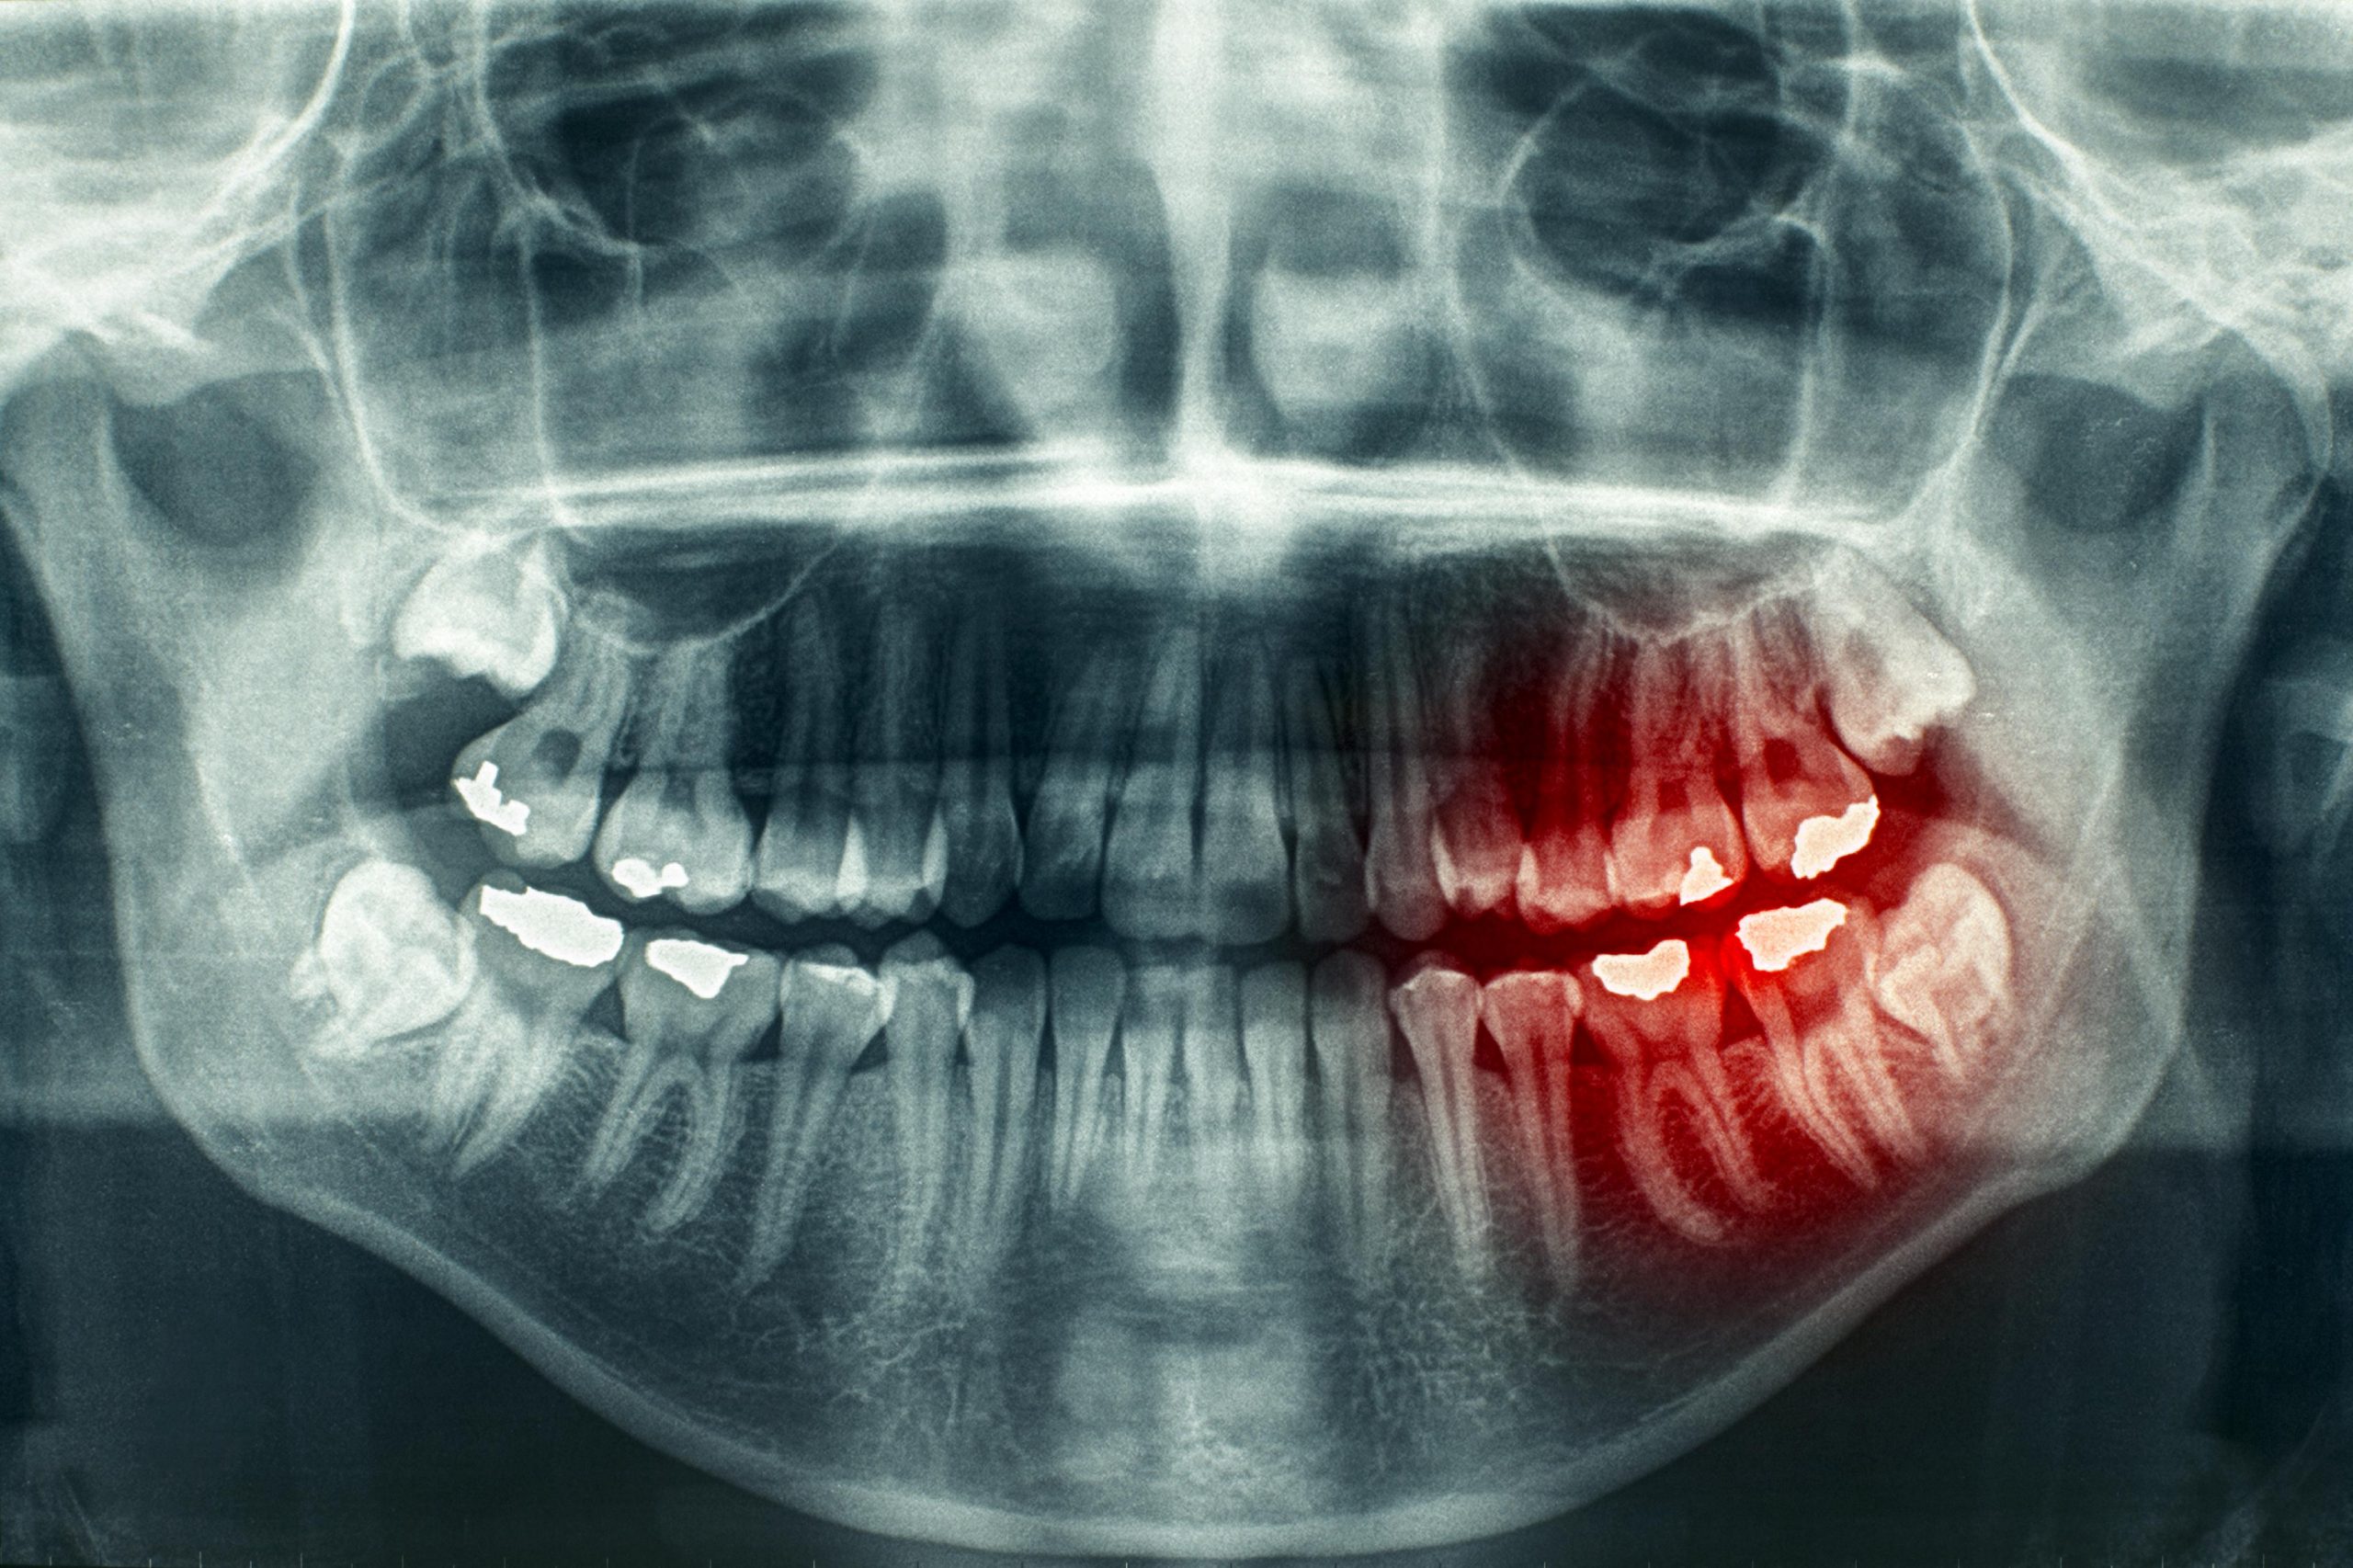 Панорамный снимок зубов: все, что нужно знать